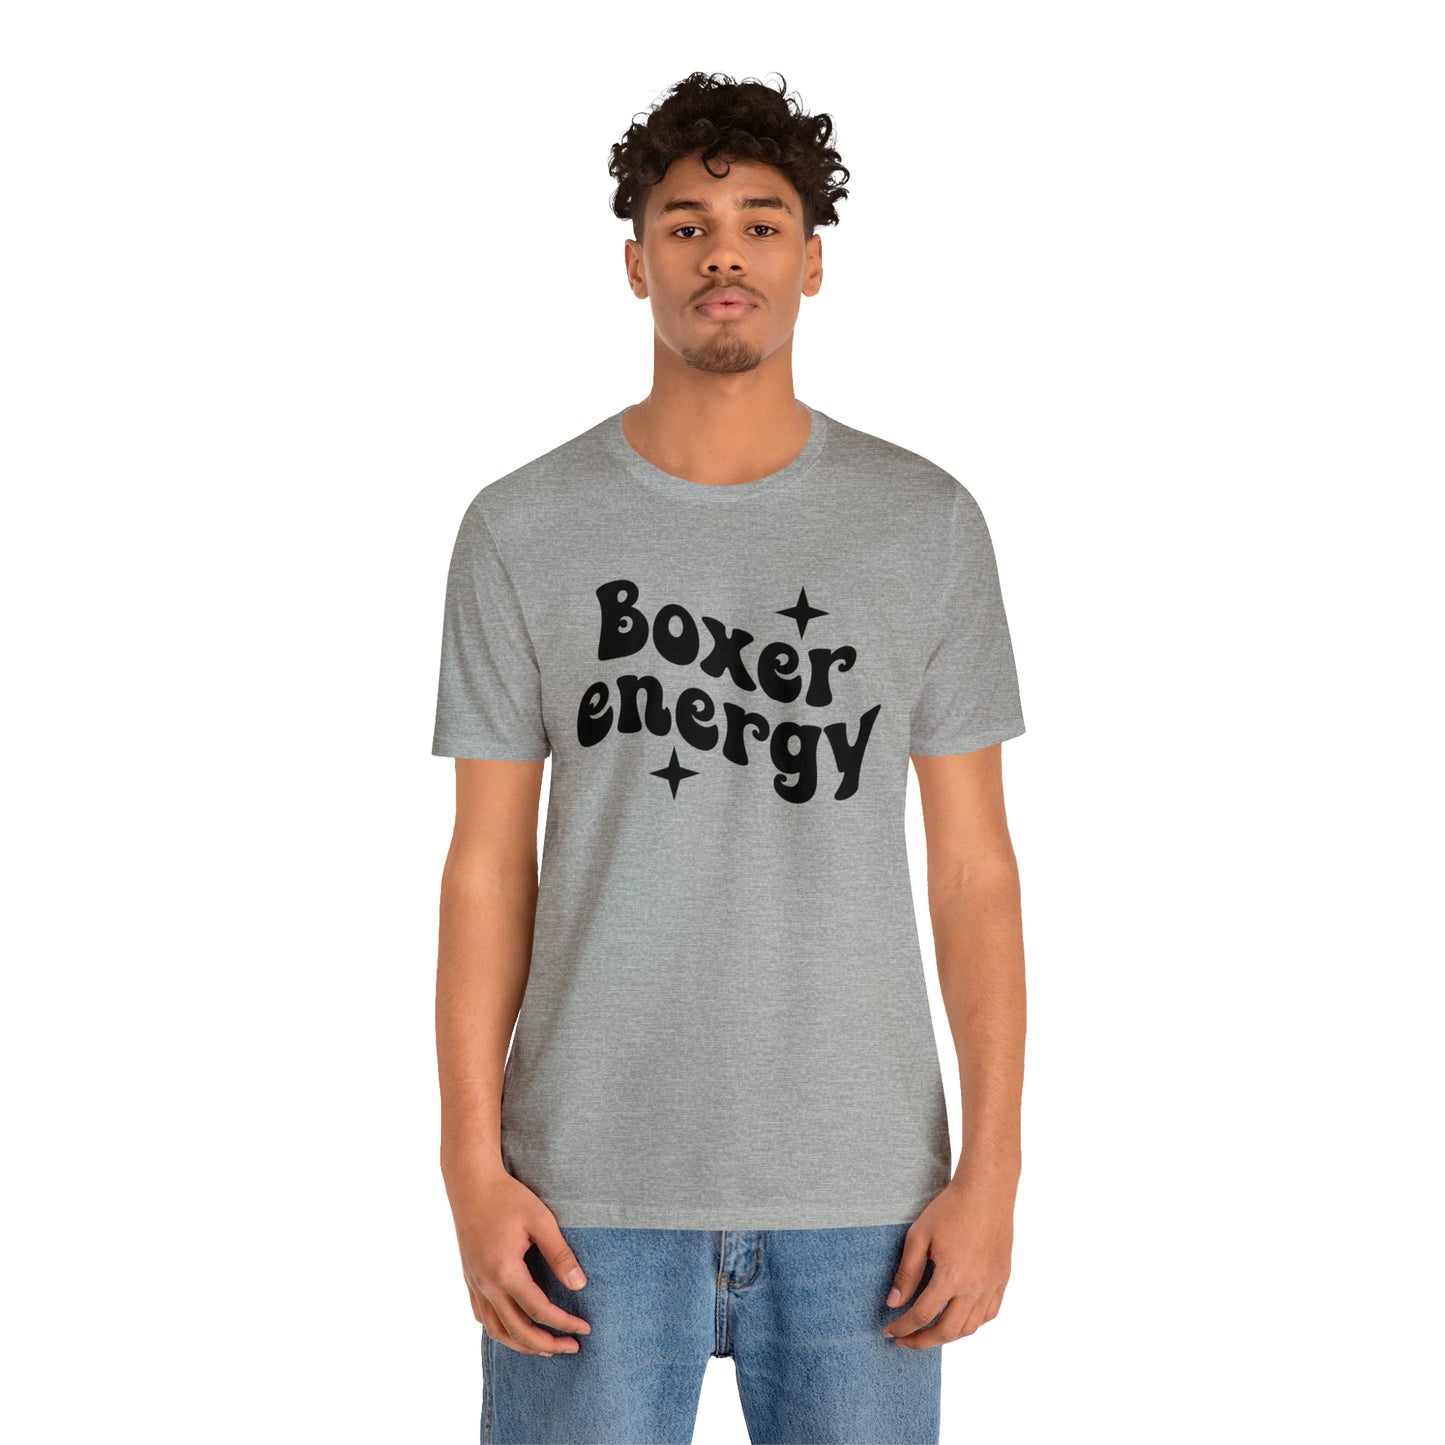 Boxer Energy Dog Short Sleeve T-shirt